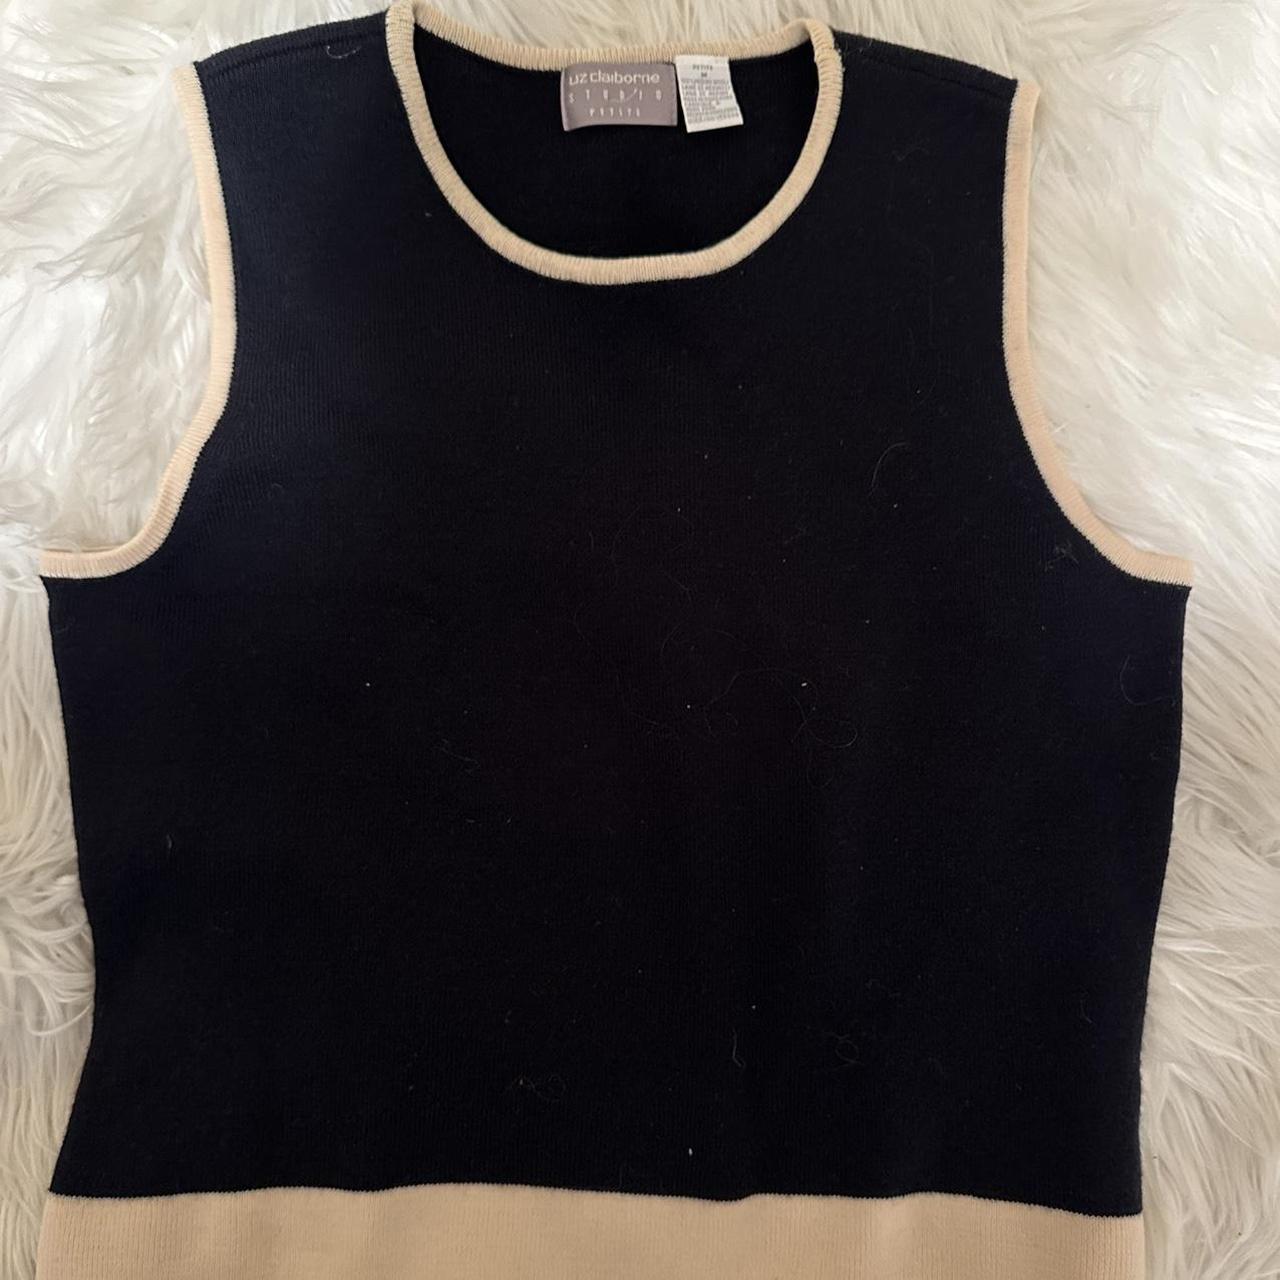 Vintage black and beige Liz claiborne sweater vest!... - Depop